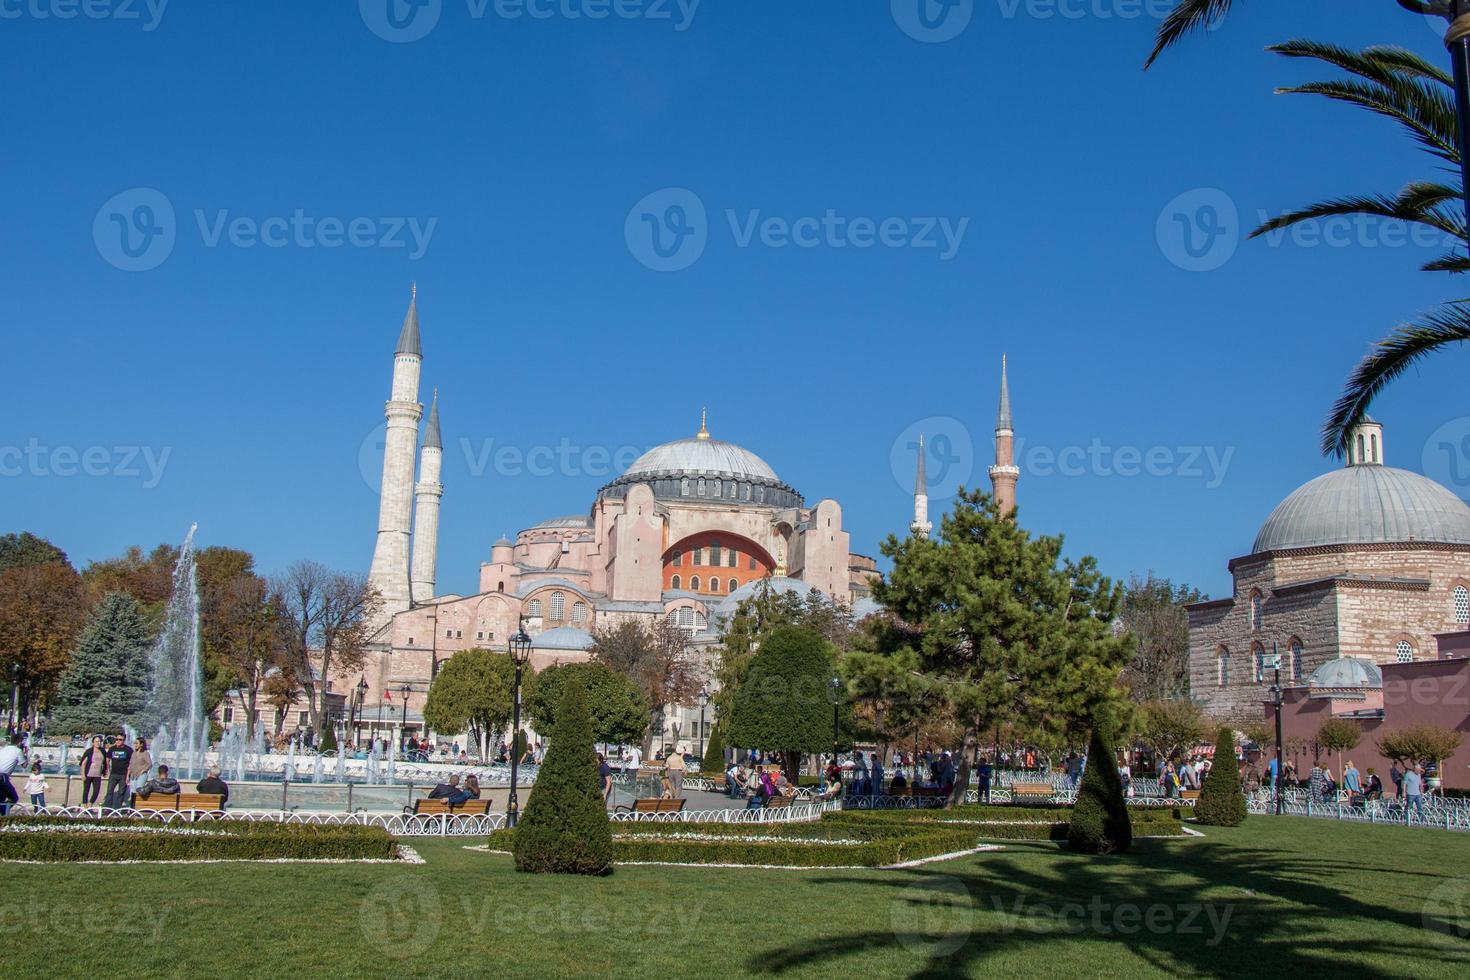 Moschee Minarett im osmanischen türkischen Stil als religiöse muslimische Tempelarchitektur foto